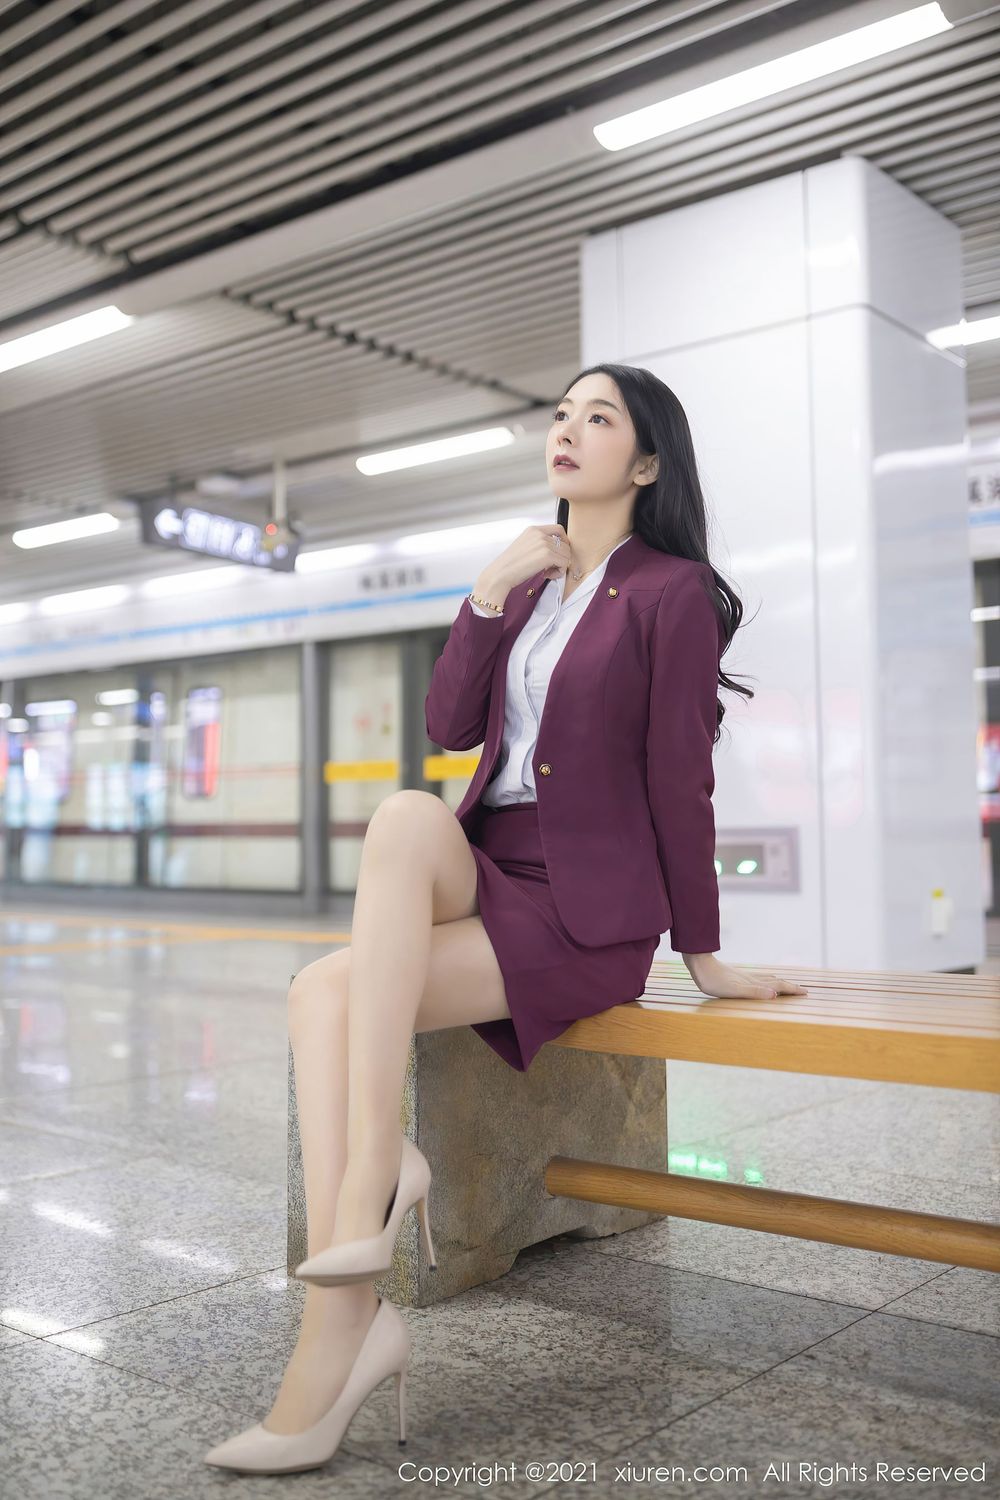 性感女神Angela小热巴 - 末班地铁场景系列娇媚写真